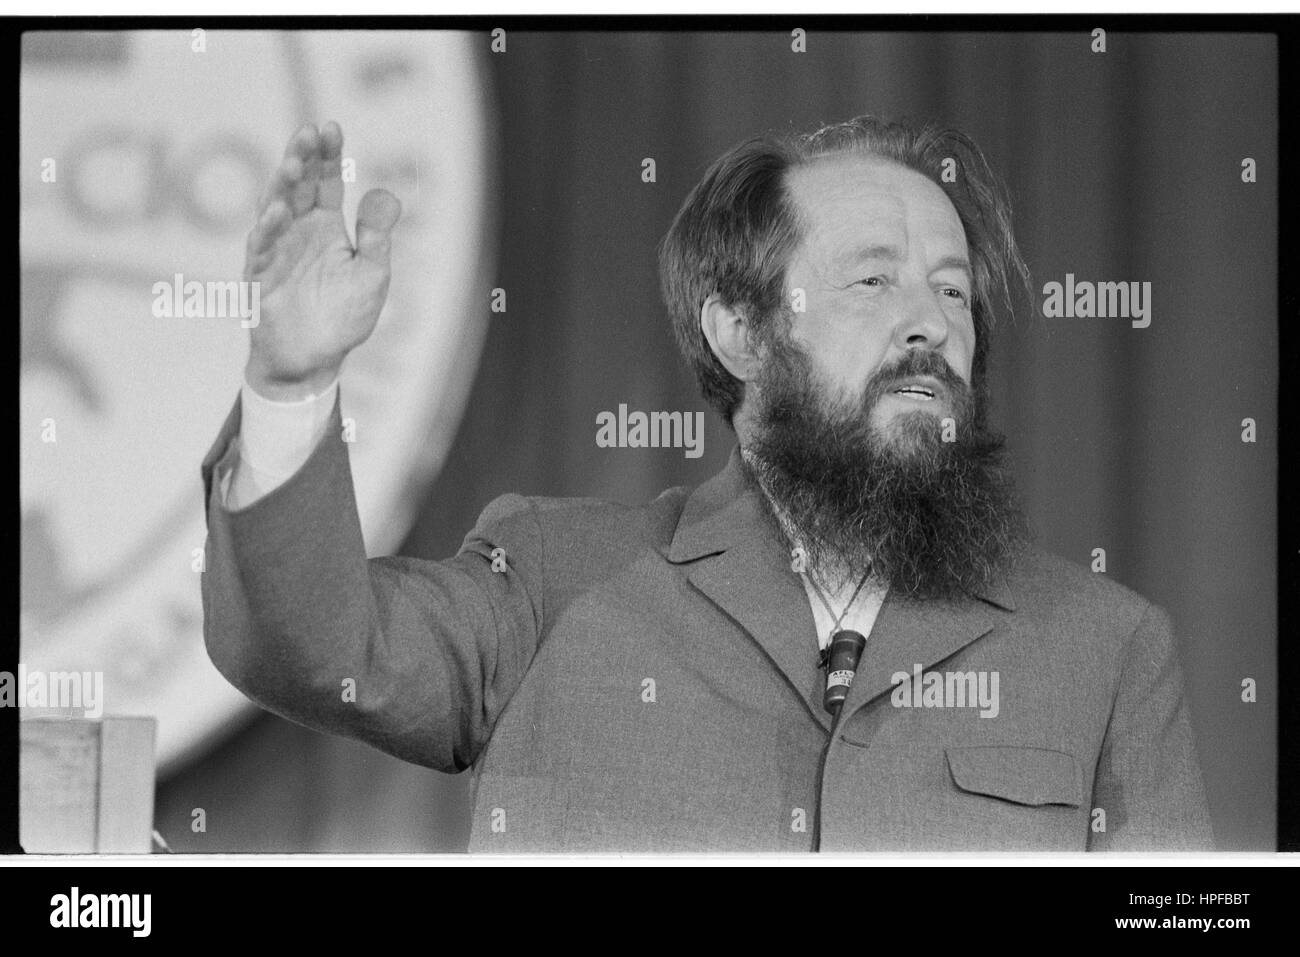 Aleksandr Solzhenitsyn intervenendo a un incontro della AFL-CIO, 06/31/1975. Foto di Marion S Trikosko Foto Stock